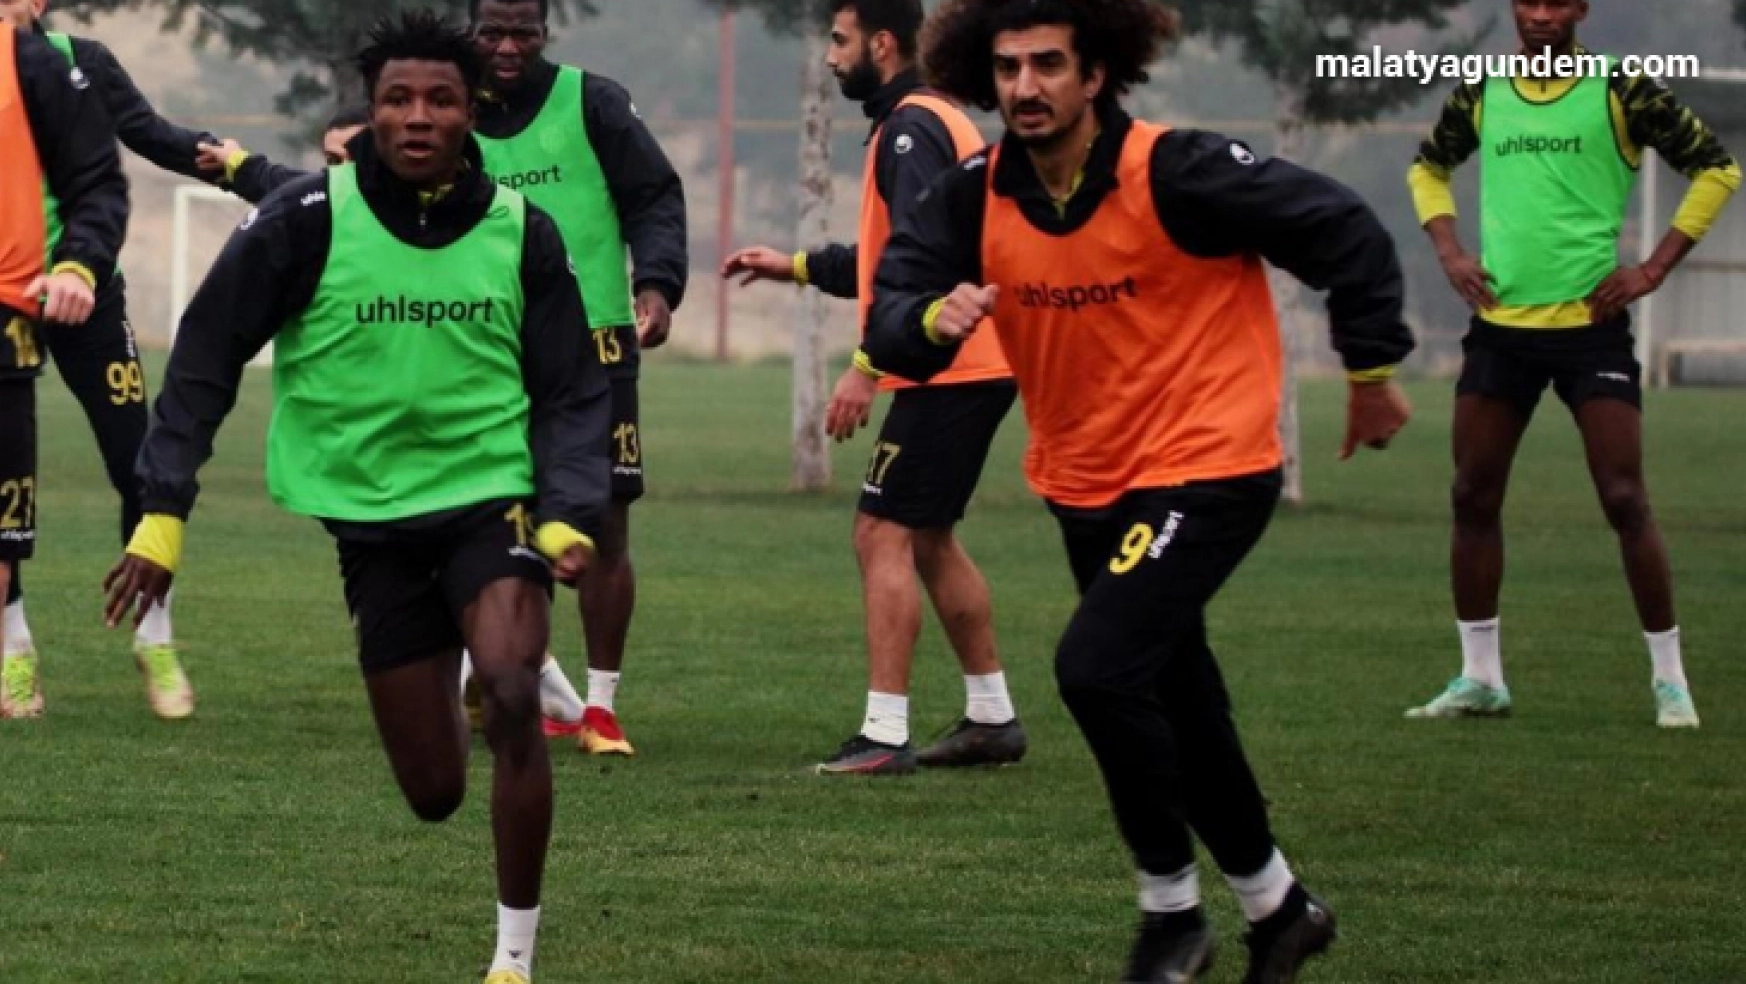 Yeni Malatyaspor, Pendikspor maçı hazırlıklarını tamamladı